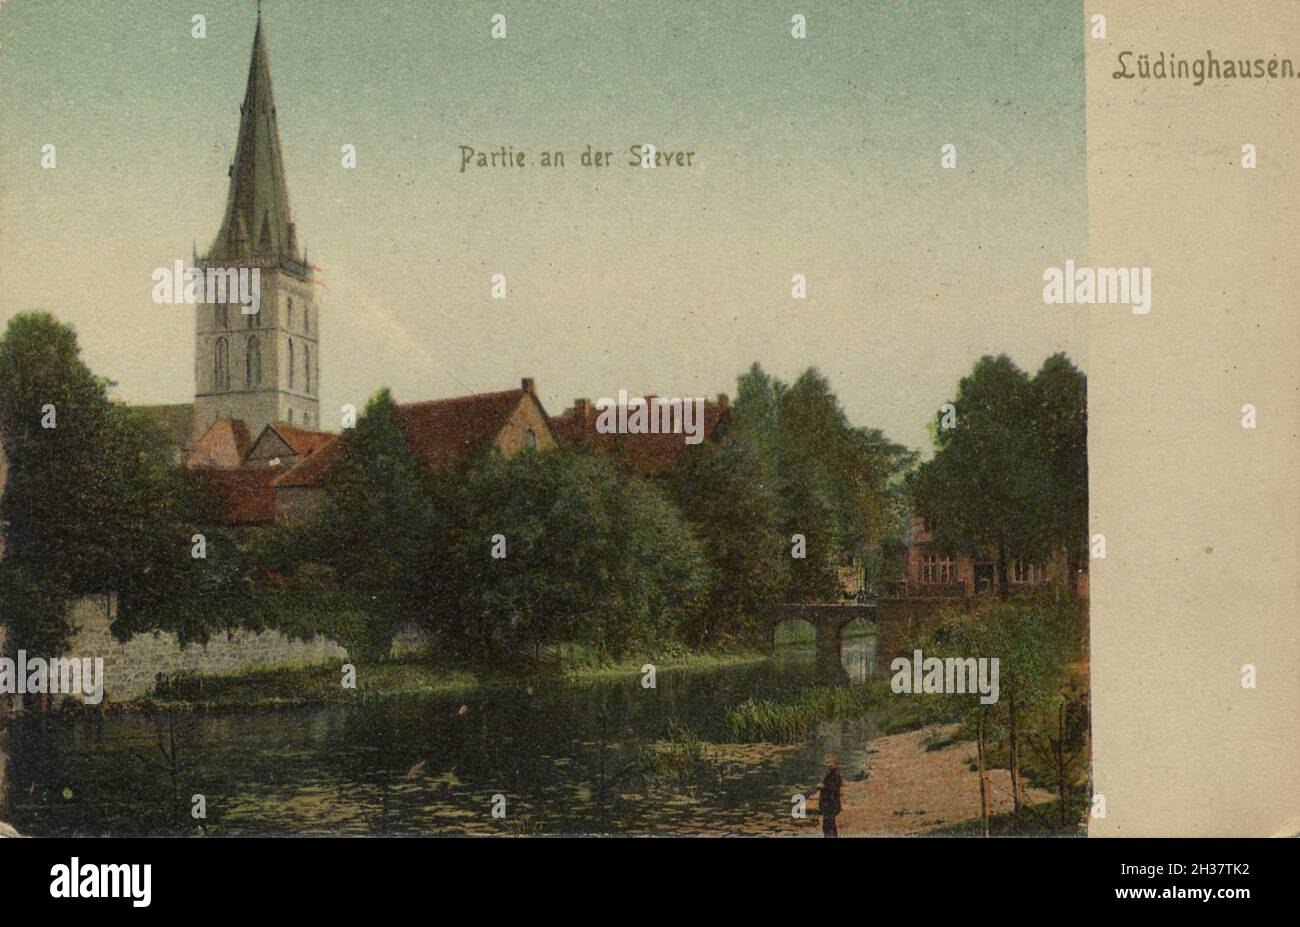 Lüdinghausen, Landkreis Coesfeld, Nordrhein-Westfalen, Deutschland, Ansicht von CA 1910, digitale Reproduktion einer gemeinfreien Postkarte Banque D'Images